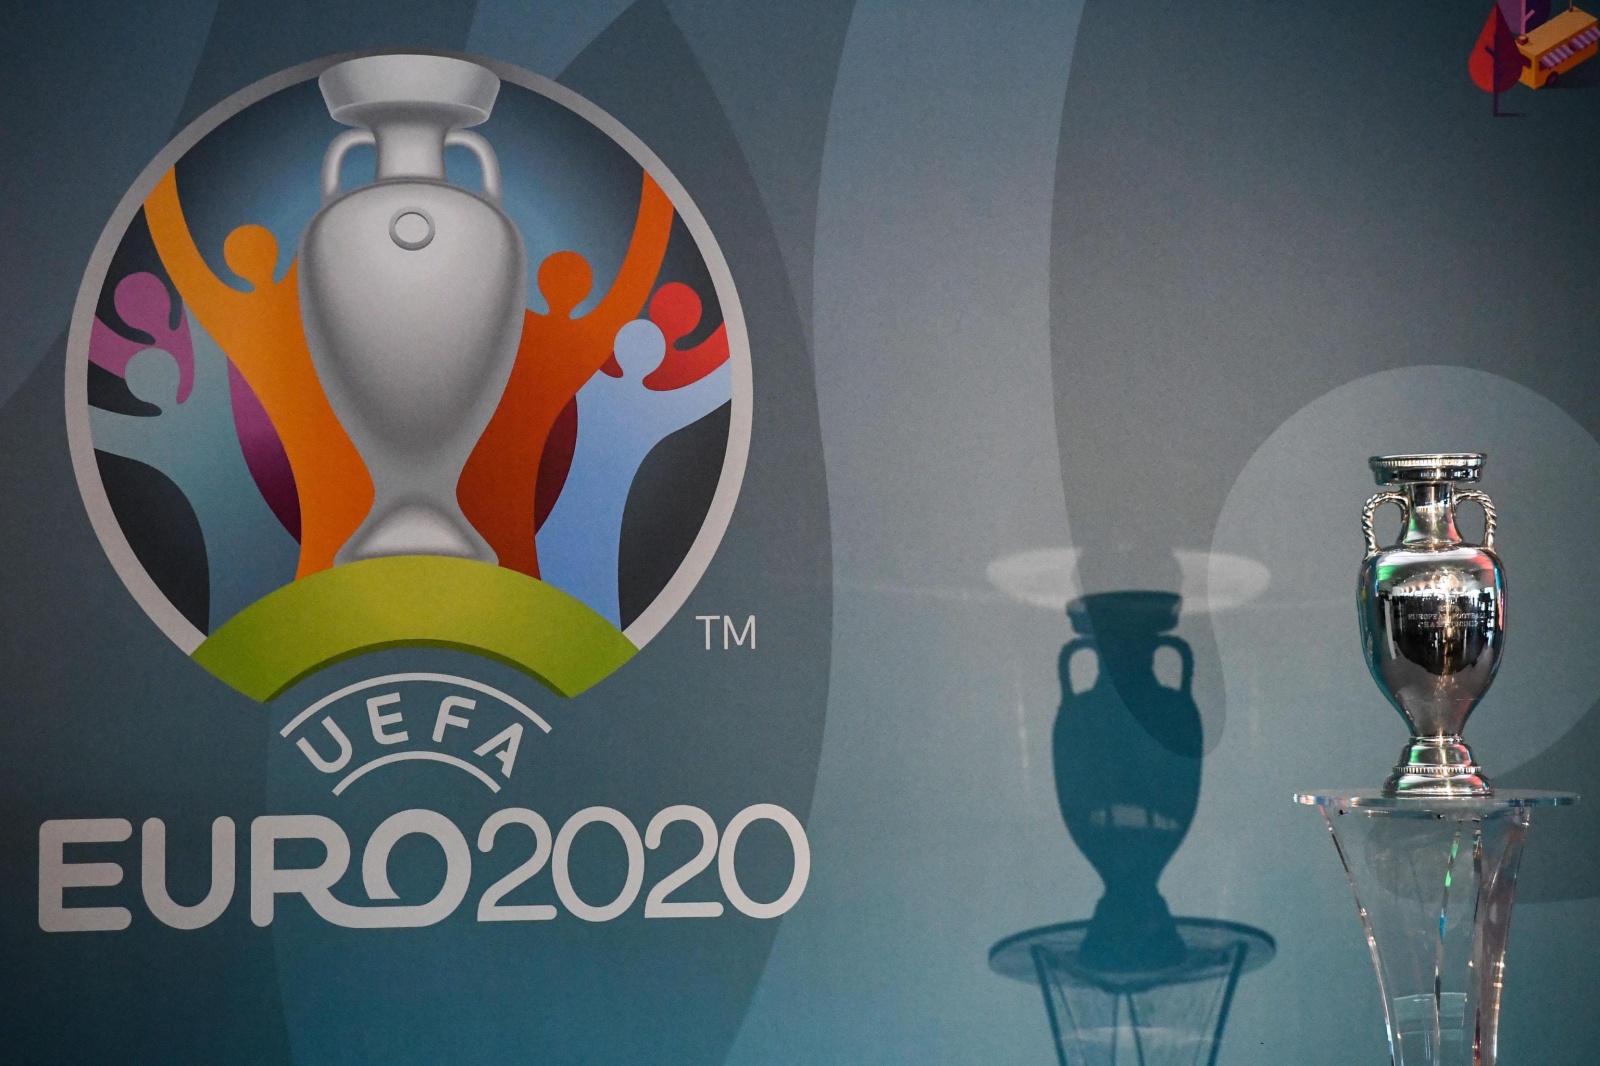 Visão  RTP assegura transmissão de 12 jogos do Euro2024, SIC e